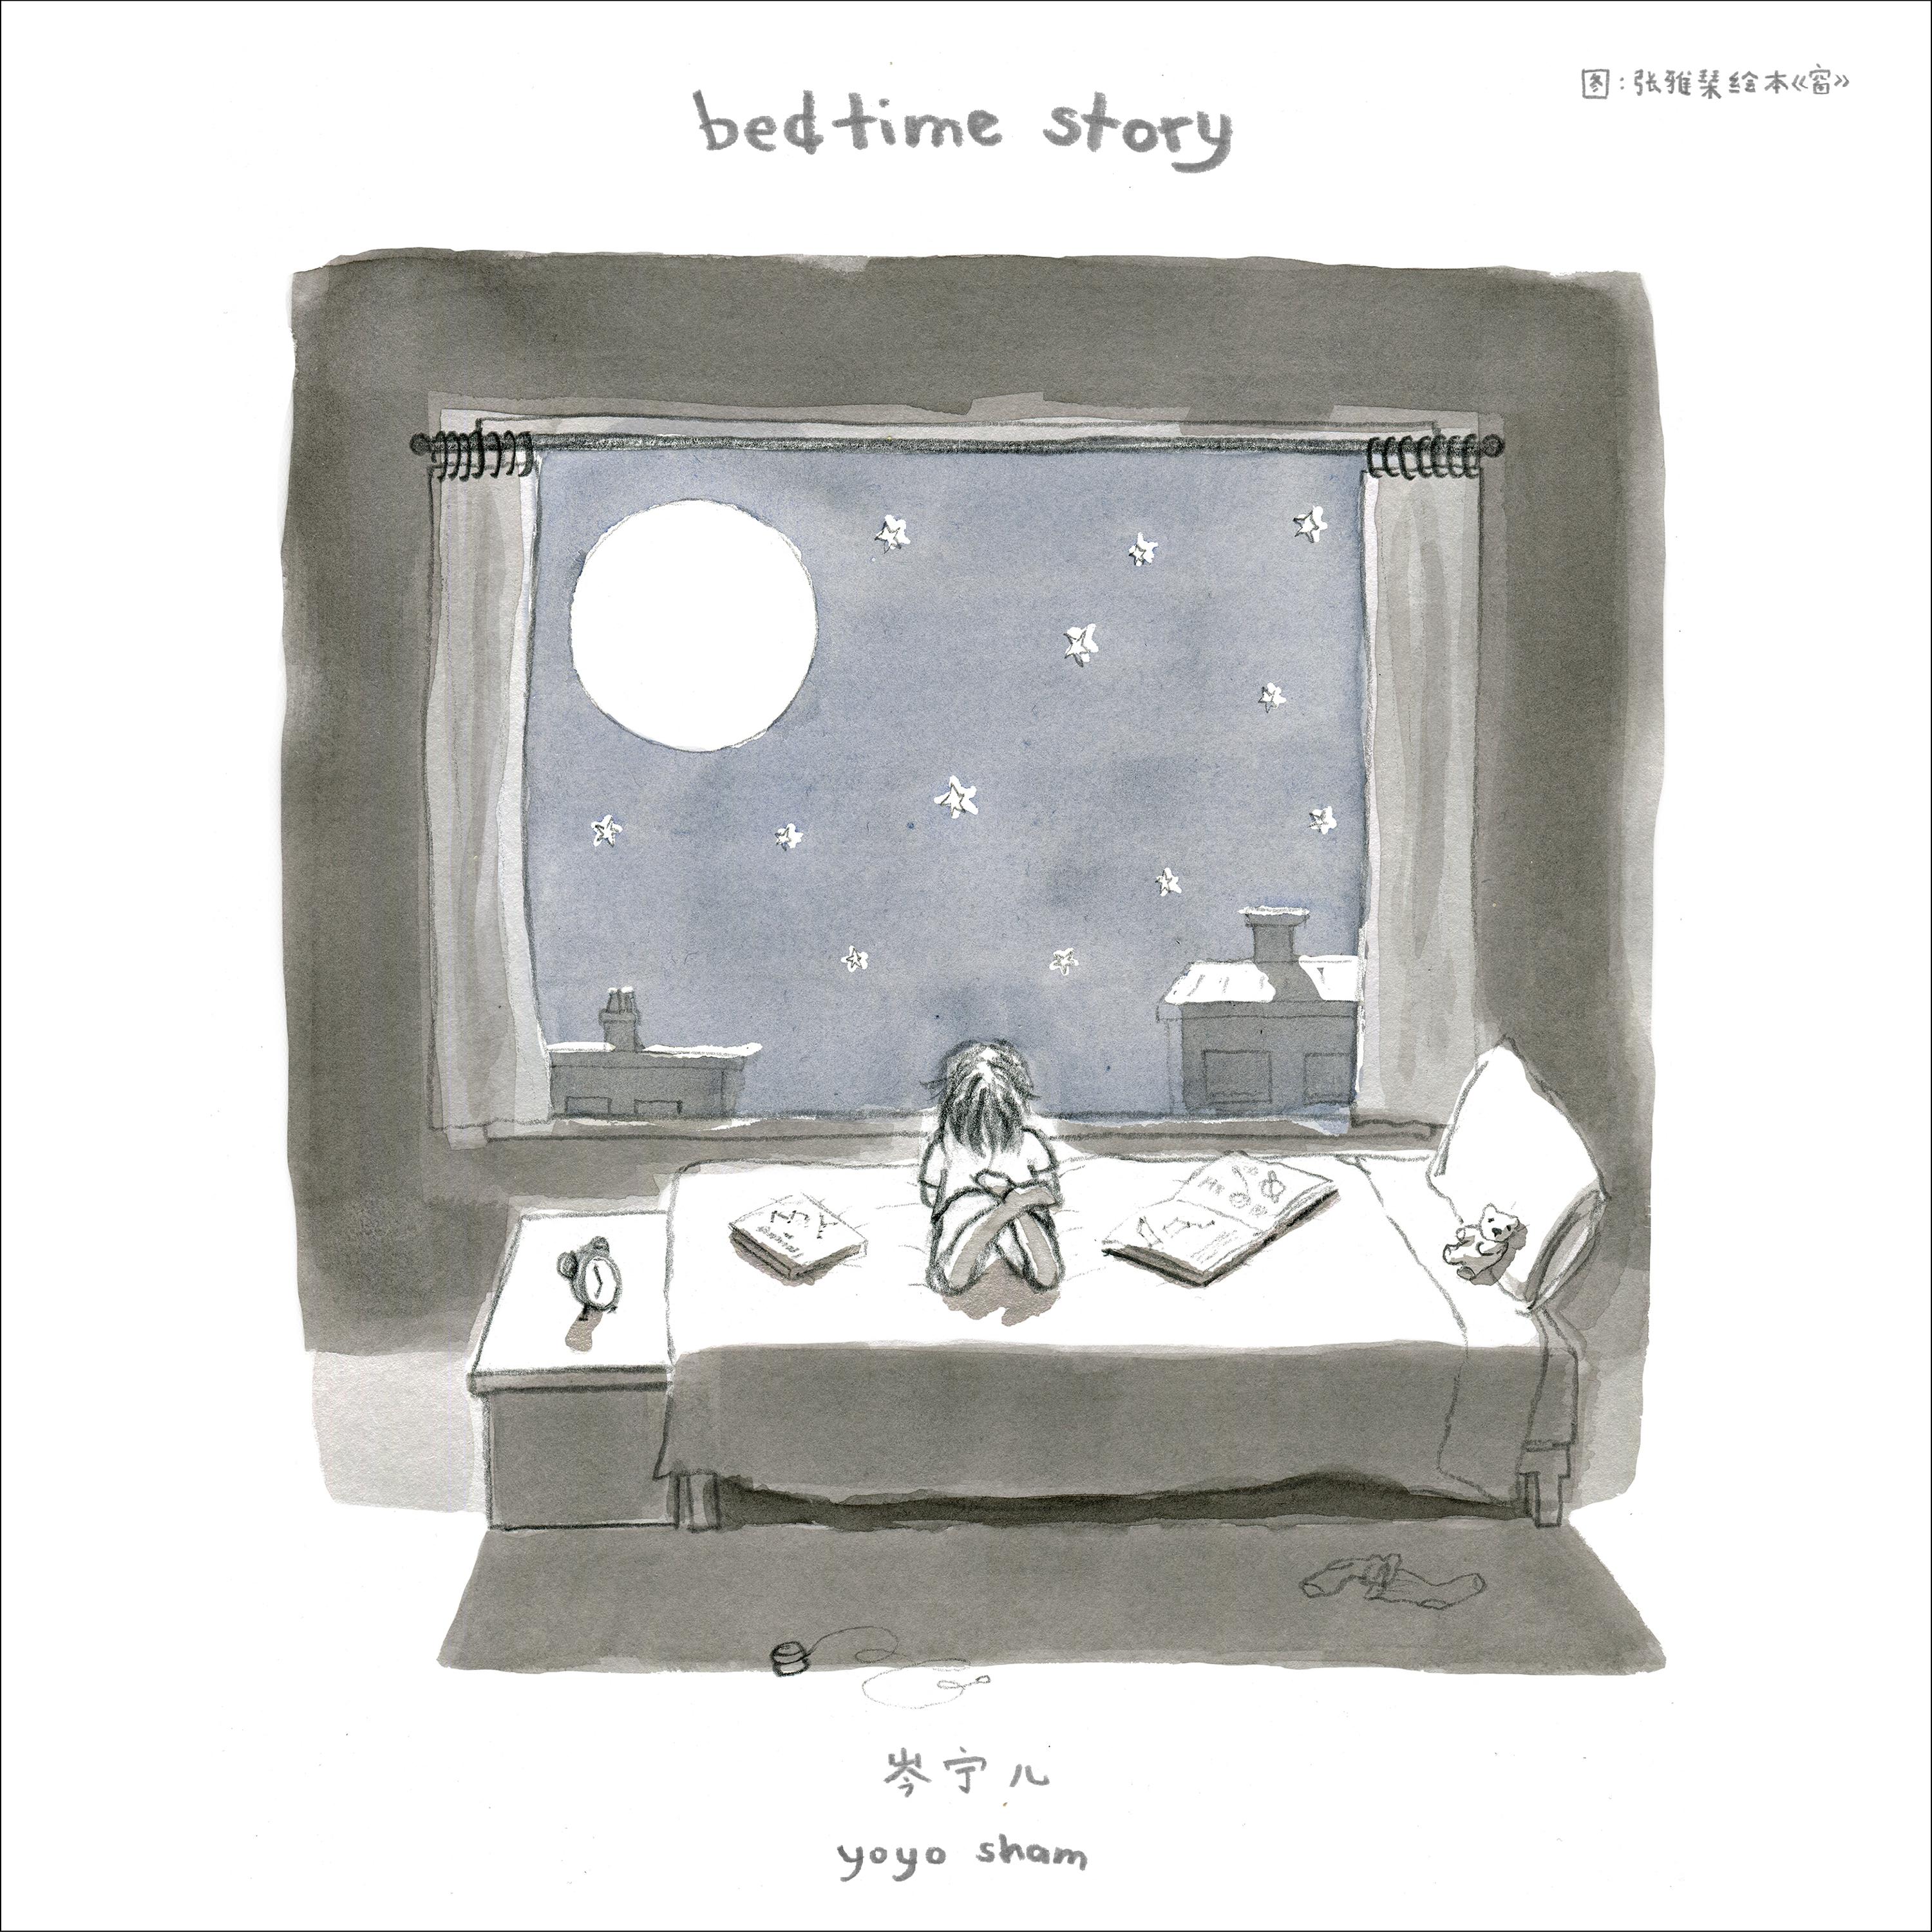 常愿意歌词 歌手岑宁儿-专辑Bedtime Story-单曲《常愿意》LRC歌词下载